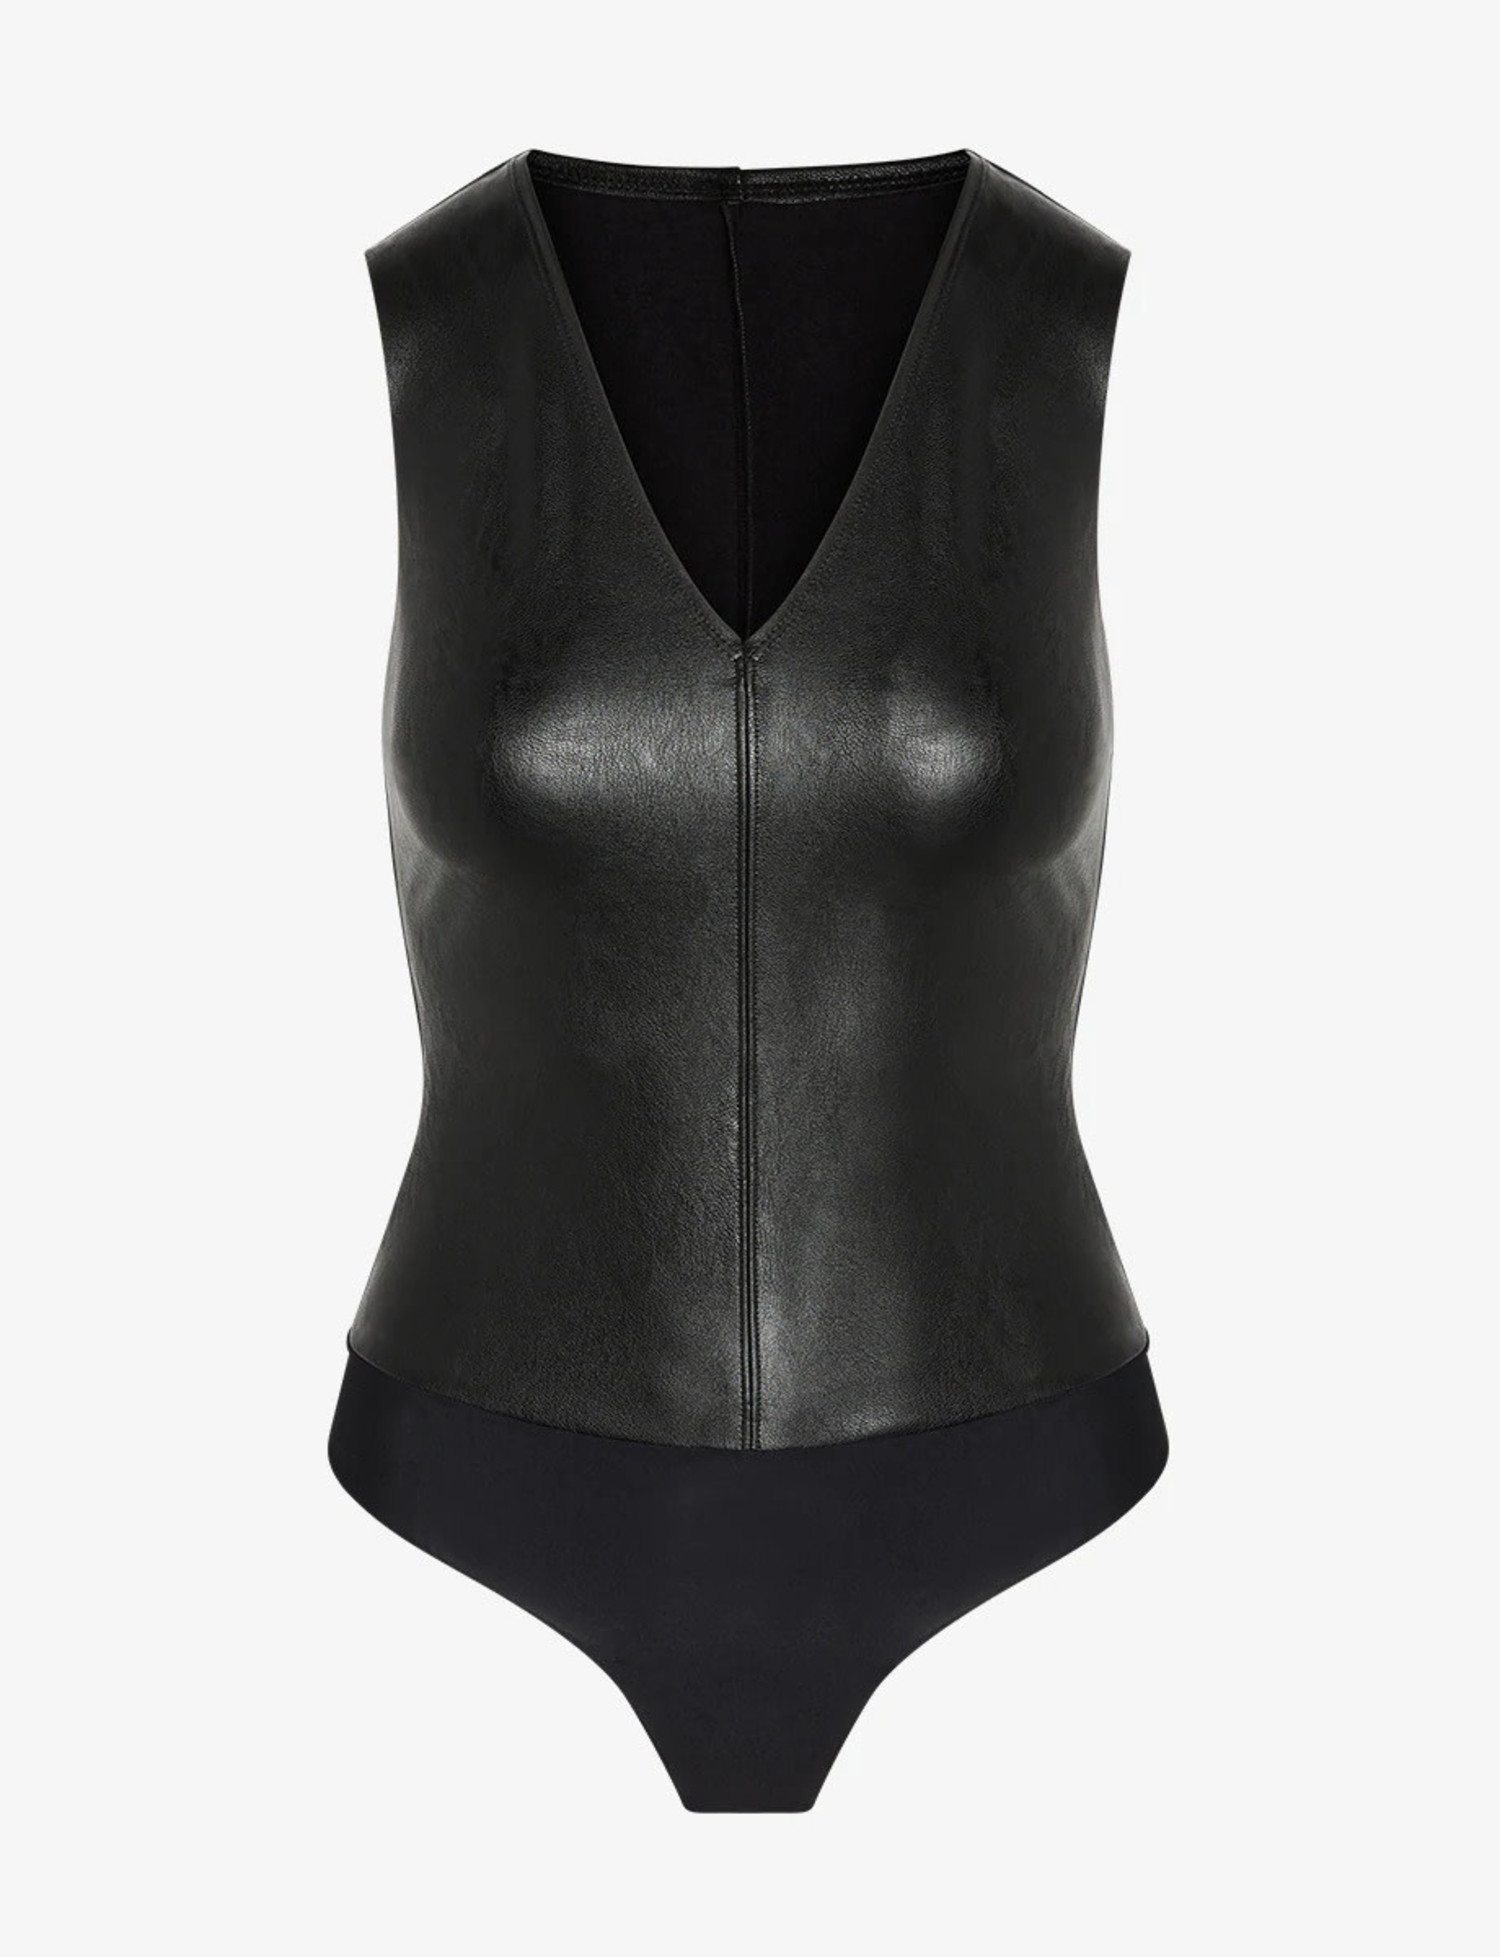 NEW $98 Commando Faux Leather Bodysuit in Black [ SZ Large ] #L685